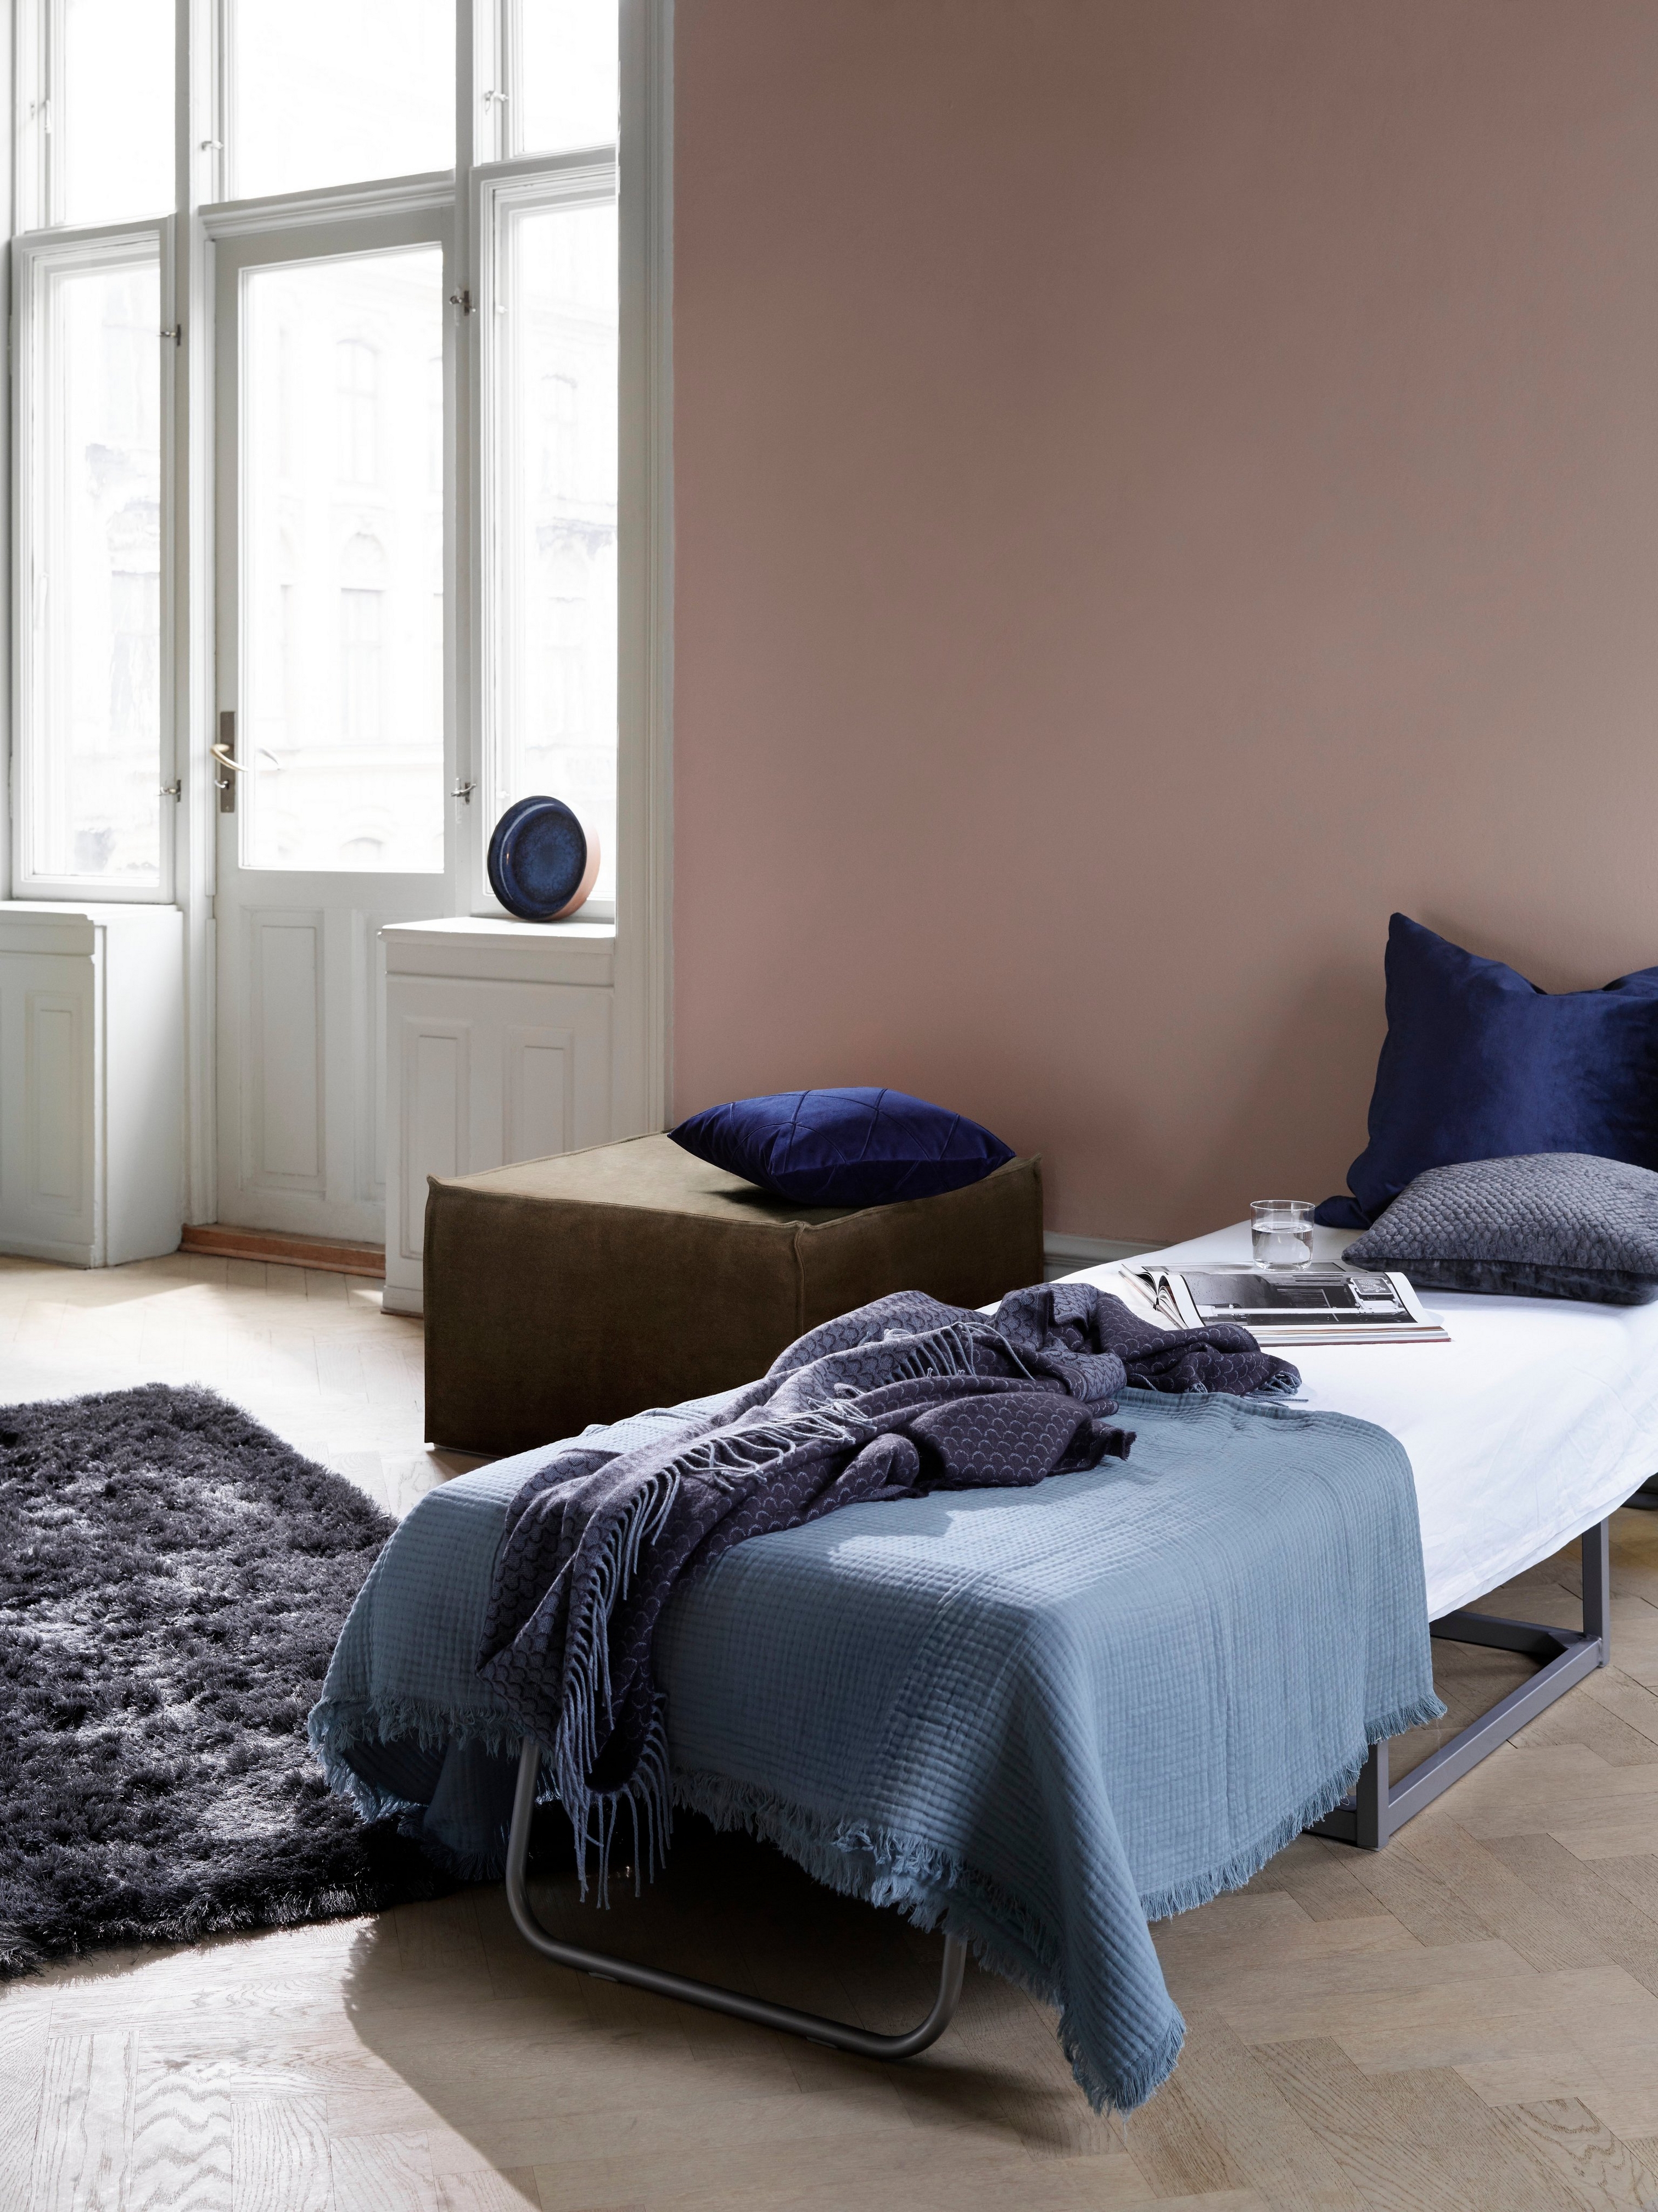 Chambre accueillante avec lit pour invité, literie bleue et tapis moelleux foncé près des fenêtres lumineuses avec le repose-pieds Xtra.